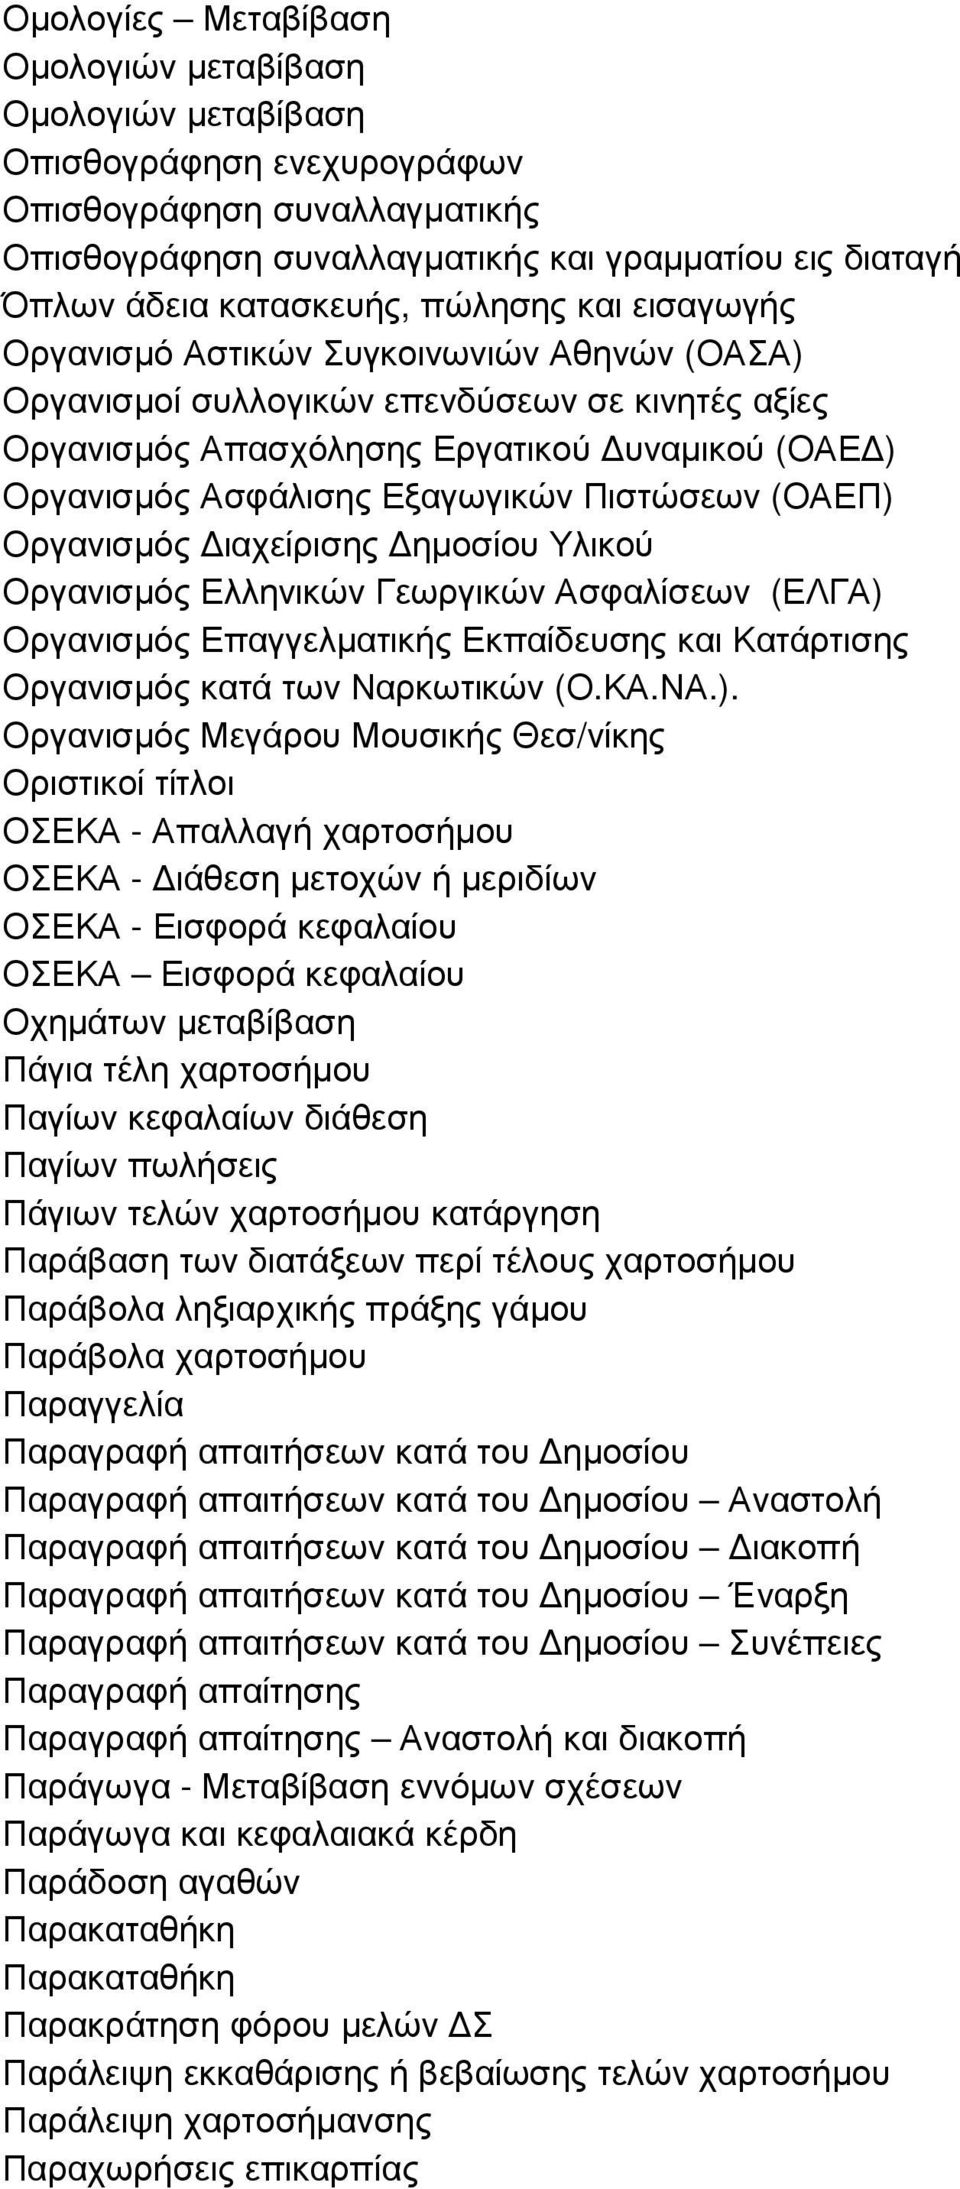 Εξαγωγικών Πιστώσεων (ΟΑΕΠ) Οργανισµός ιαχείρισης ηµοσίου Υλικού Οργανισµός Ελληνικών Γεωργικών Ασφαλίσεων (ΕΛΓΑ) Οργανισµός Επαγγελµατικής Εκπαίδευσης και Κατάρτισης Οργανισµός κατά των Ναρκωτικών